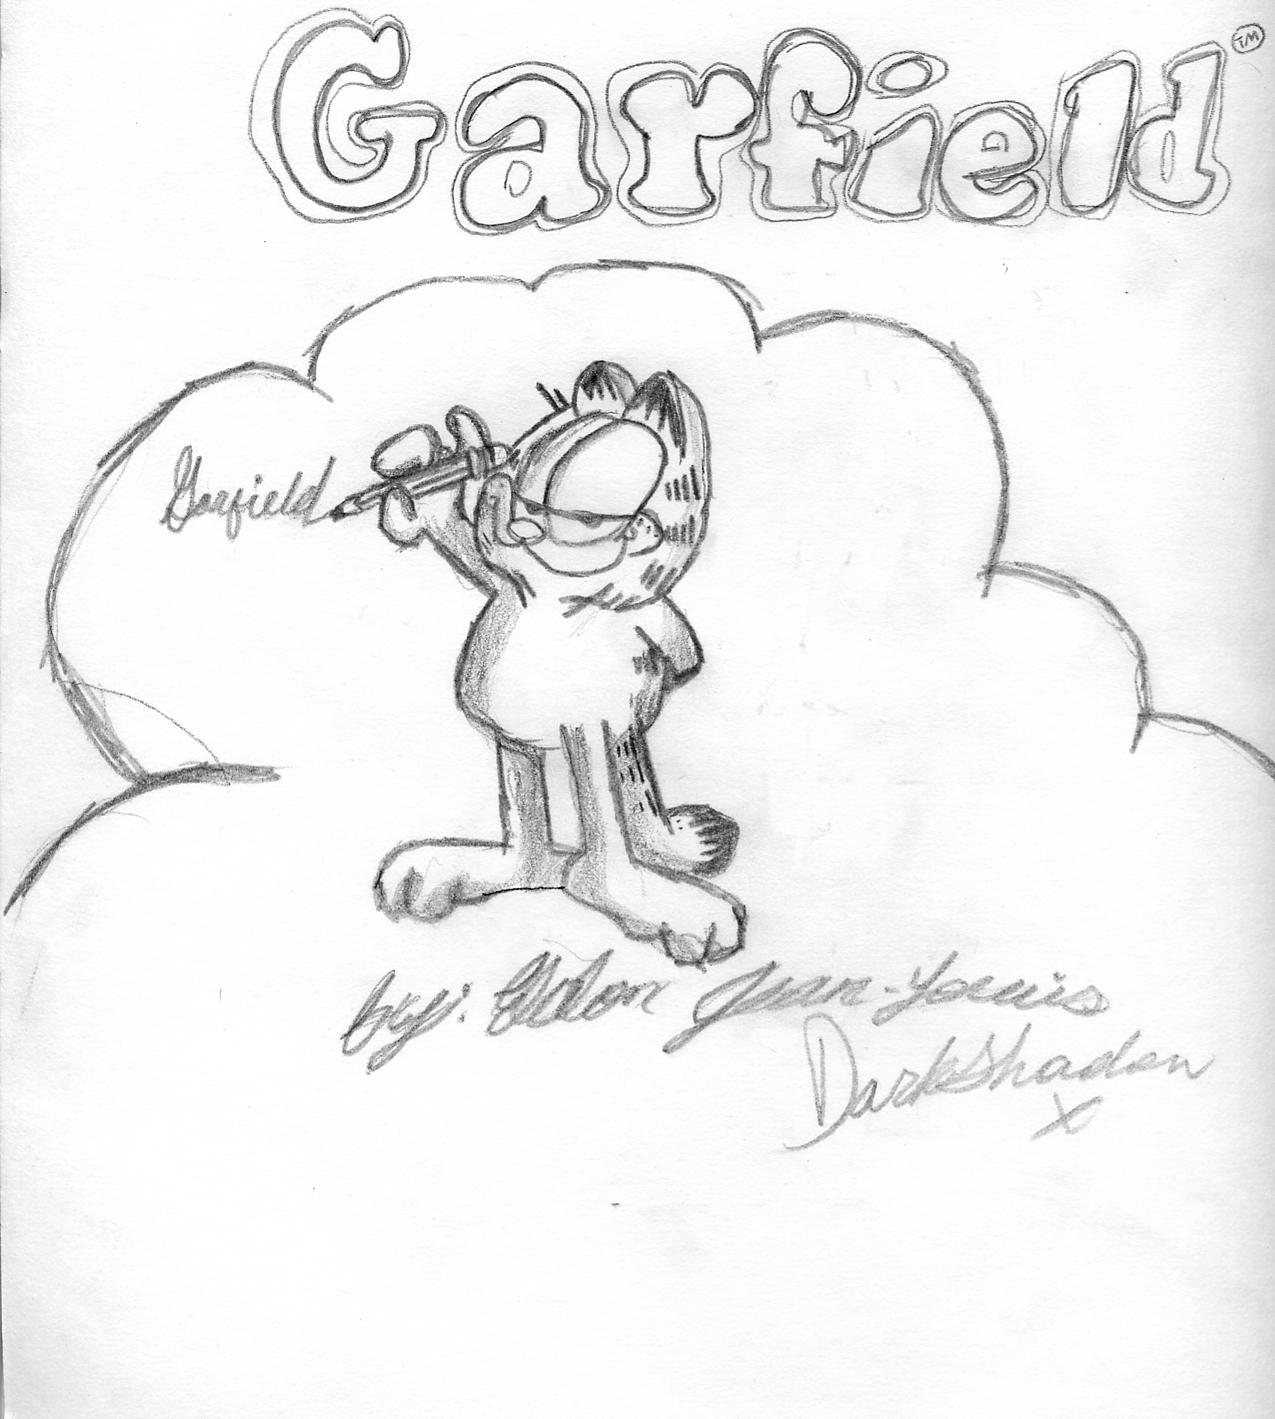 "Garfield Script" by DarkShadowX